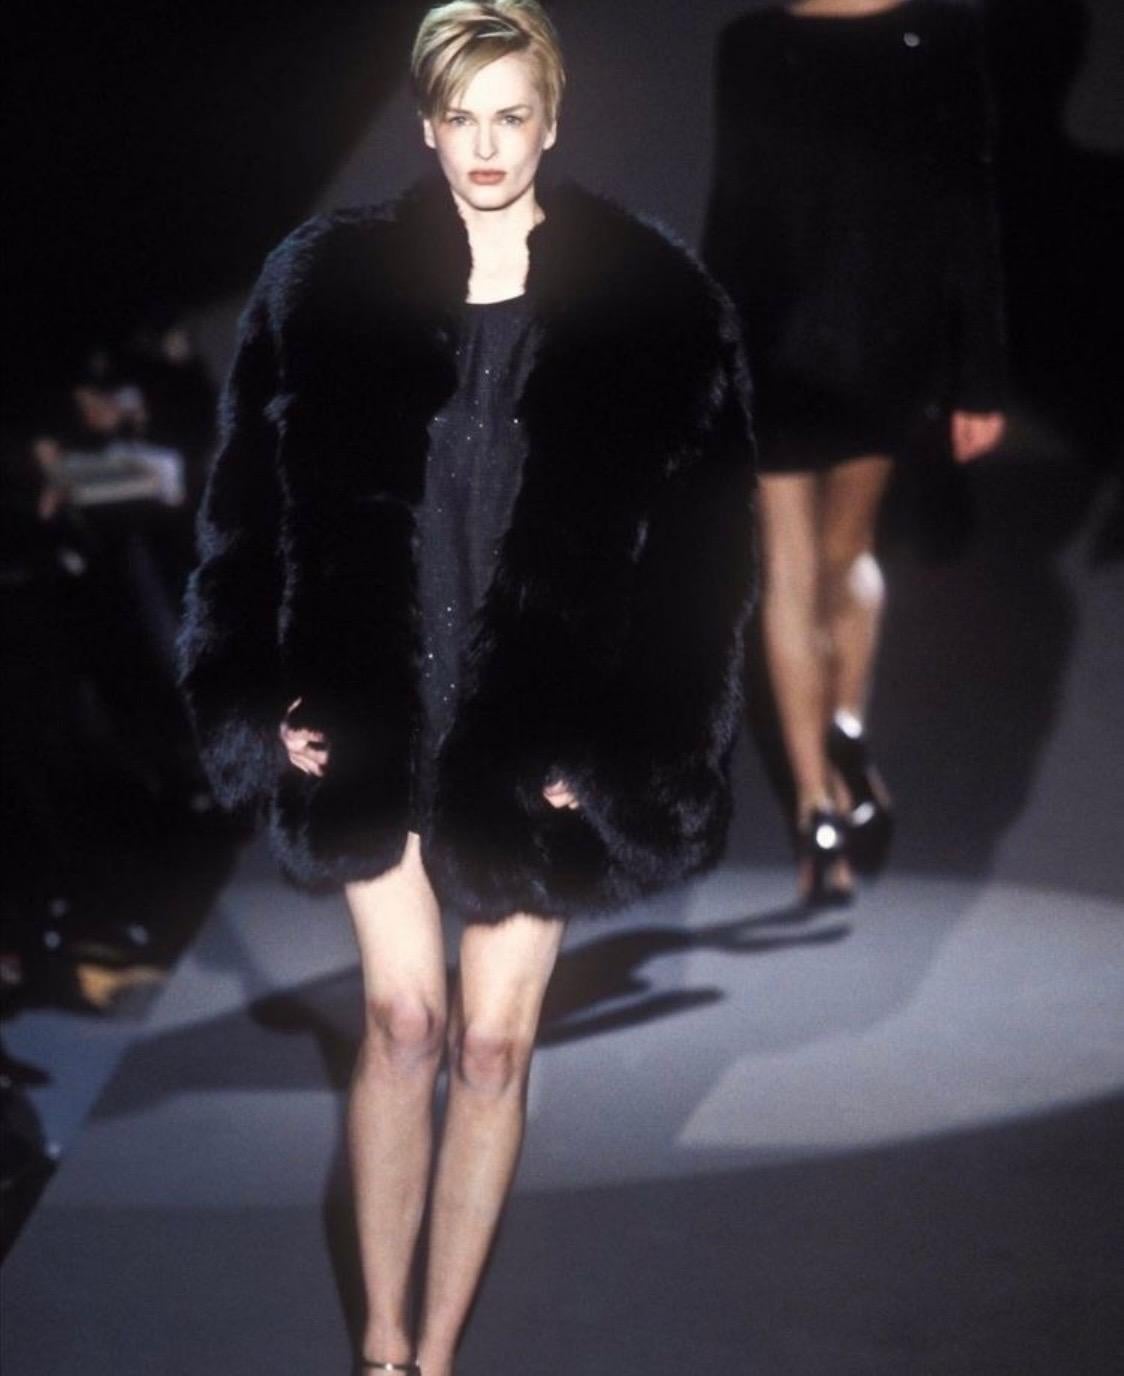 Voici l'une des créations les plus prisées de Tom Ford lorsqu'il travaillait pour la maison Gucci. Ce manteau surdimensionné en fourrure de renard noir a fait ses débuts lors de la présentation du défilé automne-hiver 1997 de Kylie Coates. Le